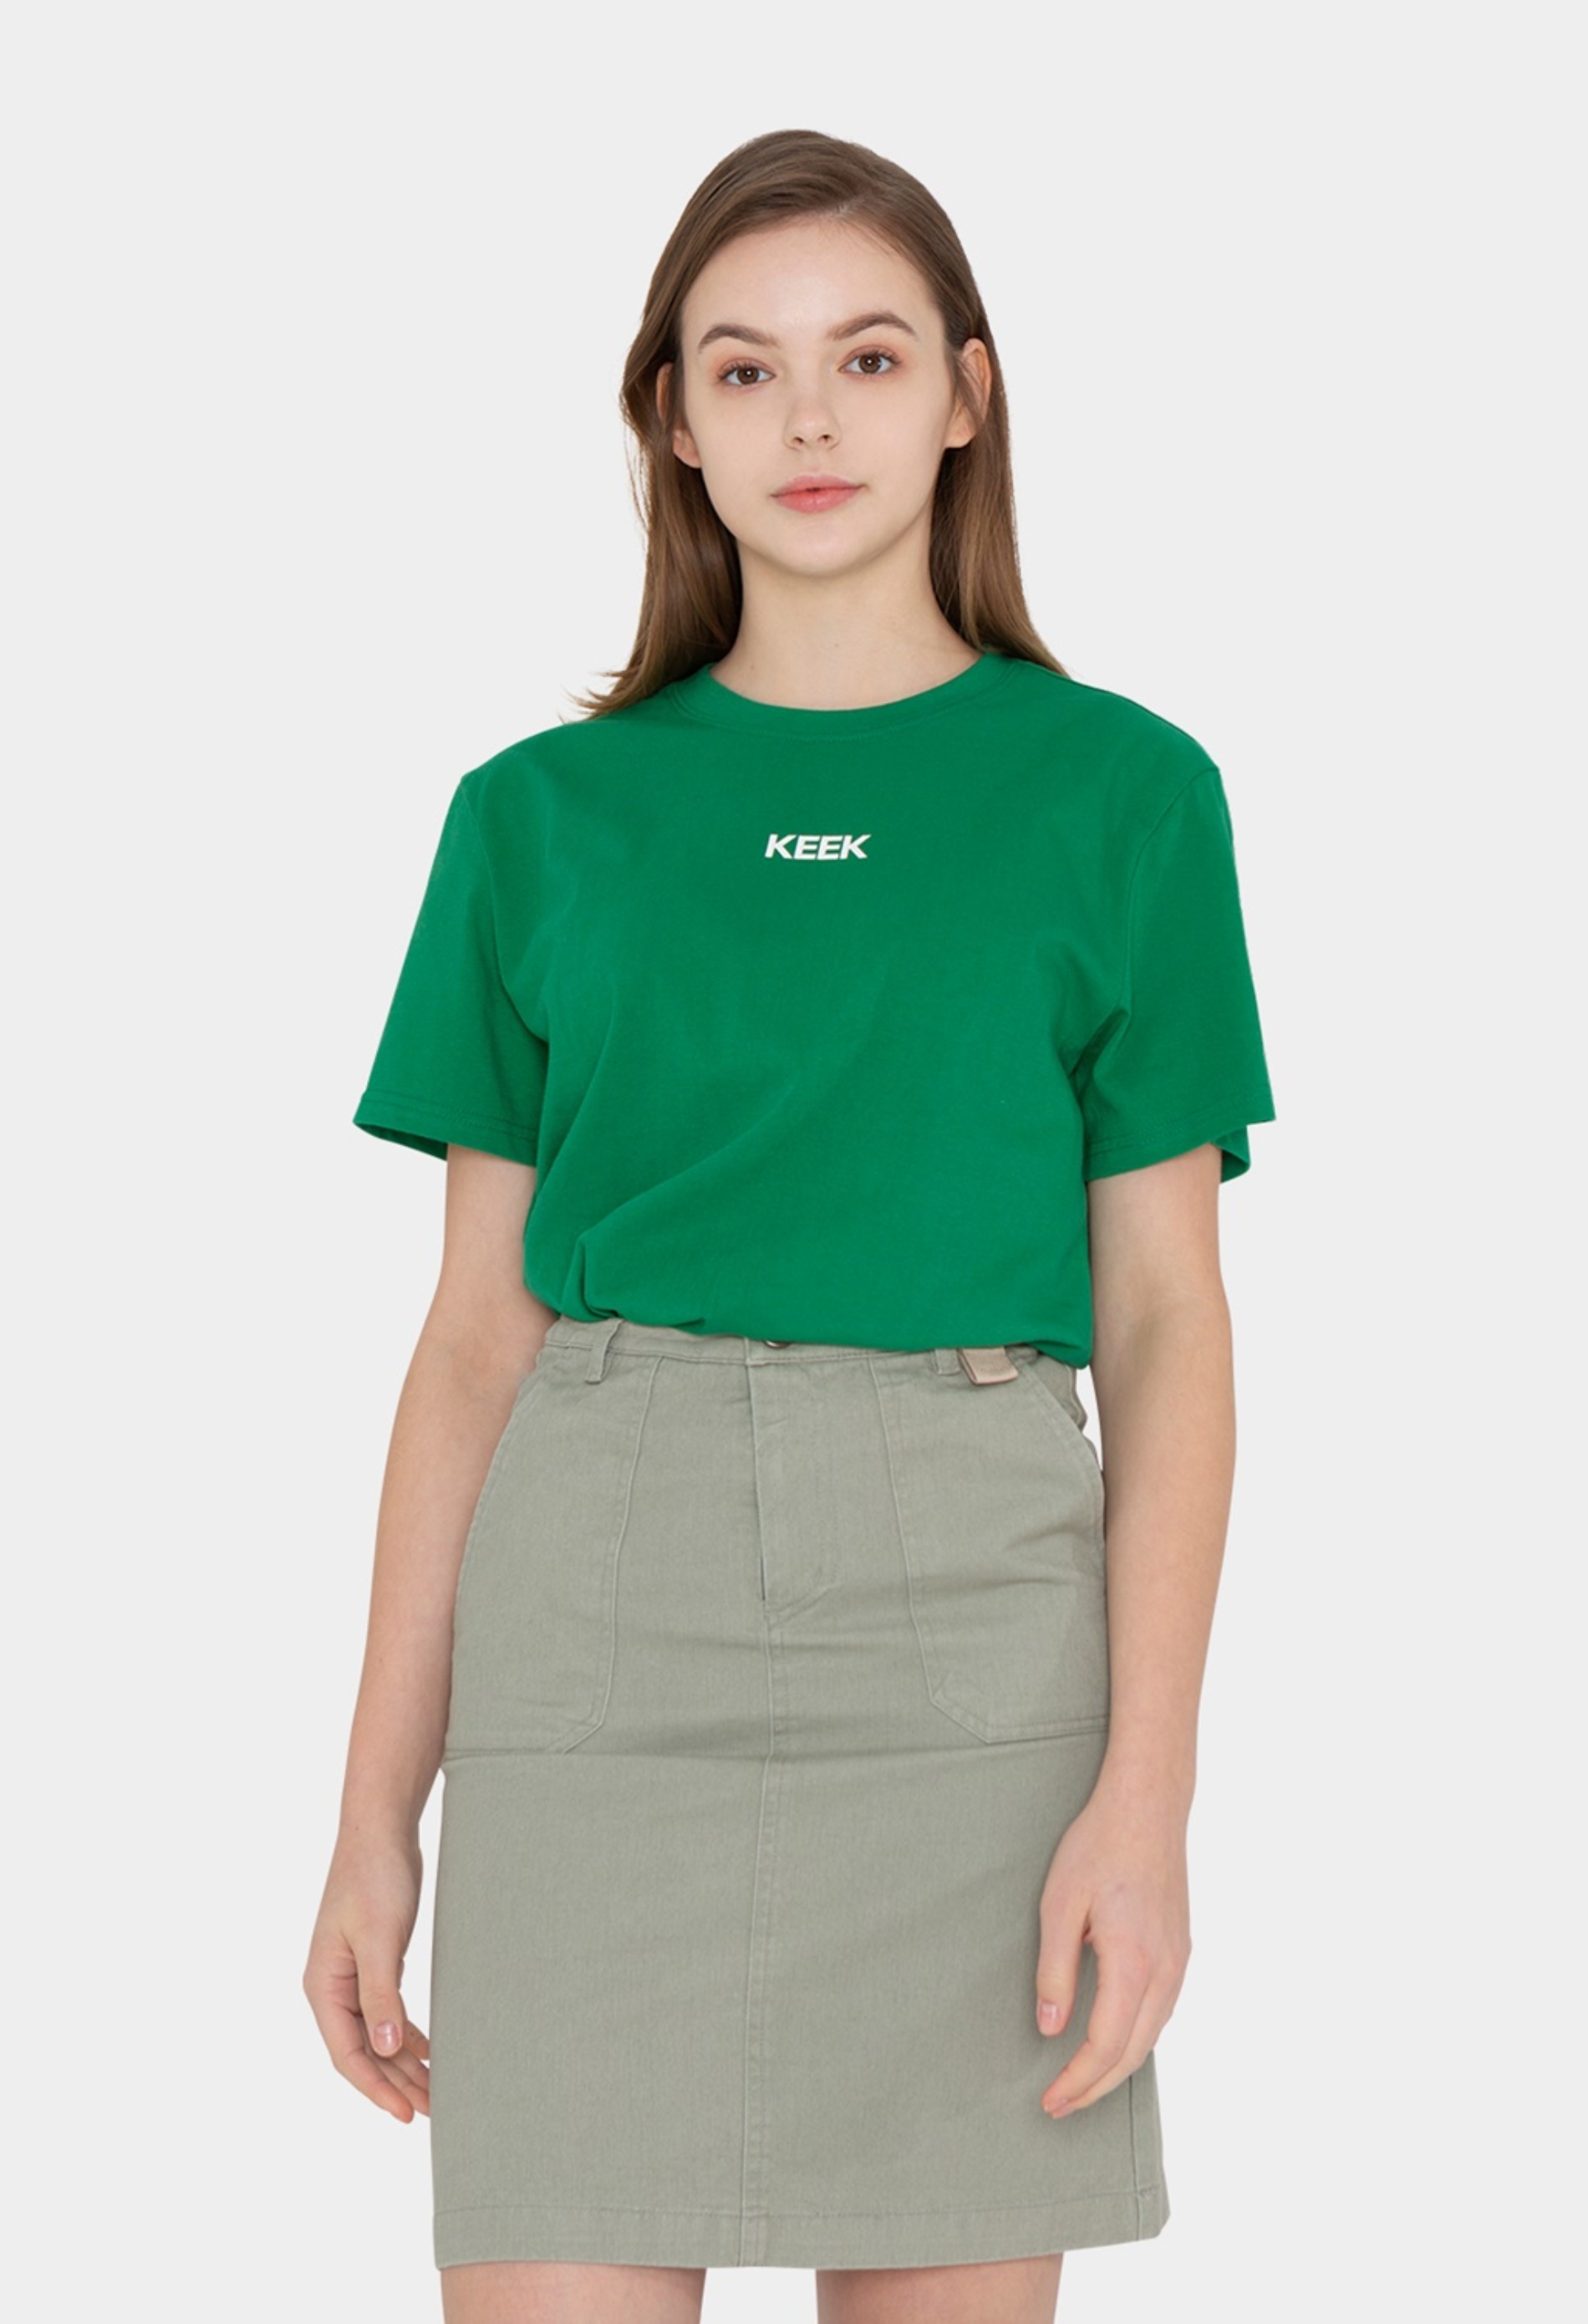 keek [Unisex] Logo Graphic T-shirts - Green 스트릿패션 유니섹스브랜드 커플시밀러룩 남자쇼핑몰 여성의류쇼핑몰 후드티 힙색